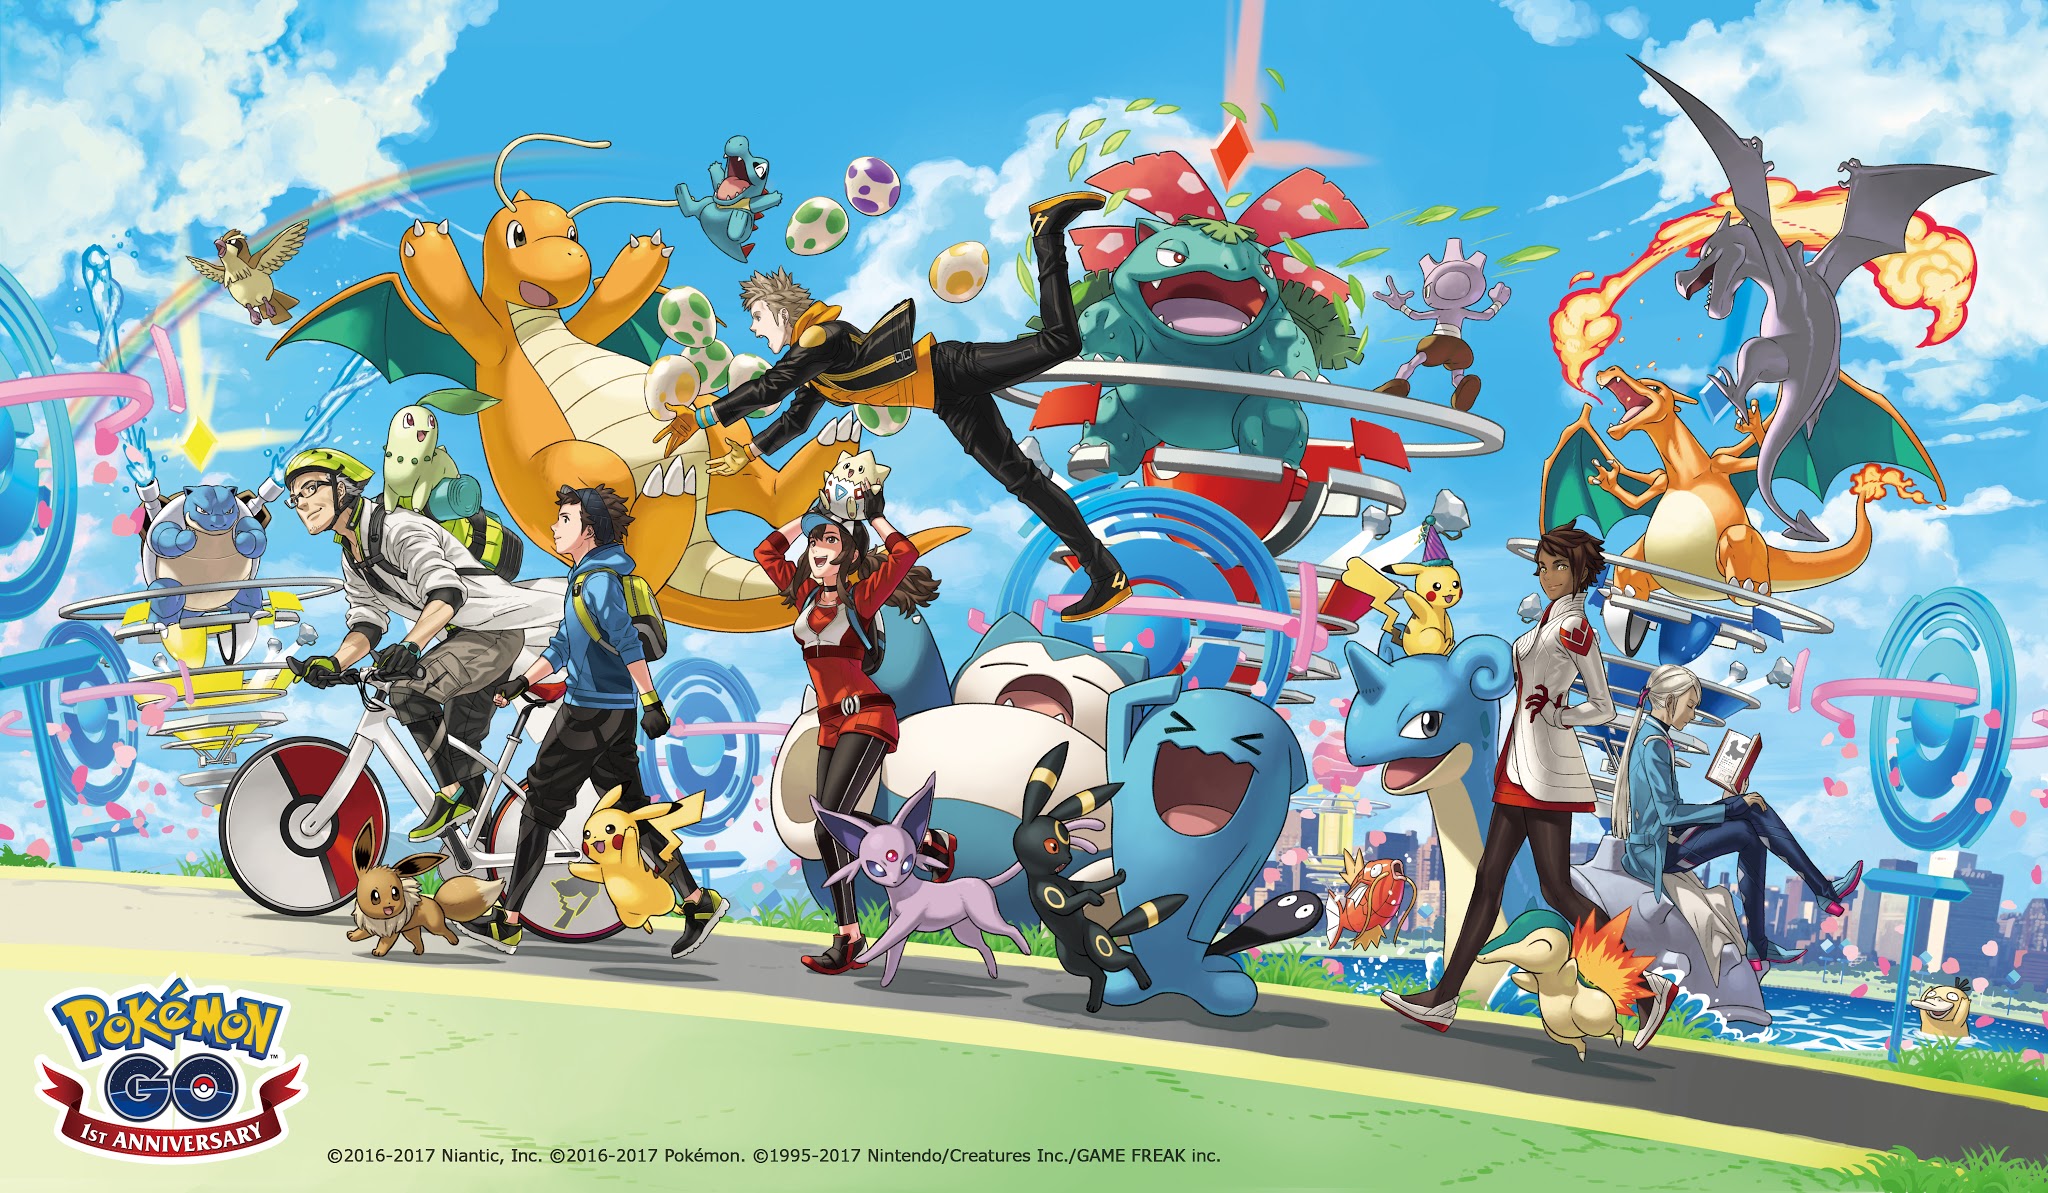 Pokémon GO is weer online, al na enkele uren deels beschikbaar